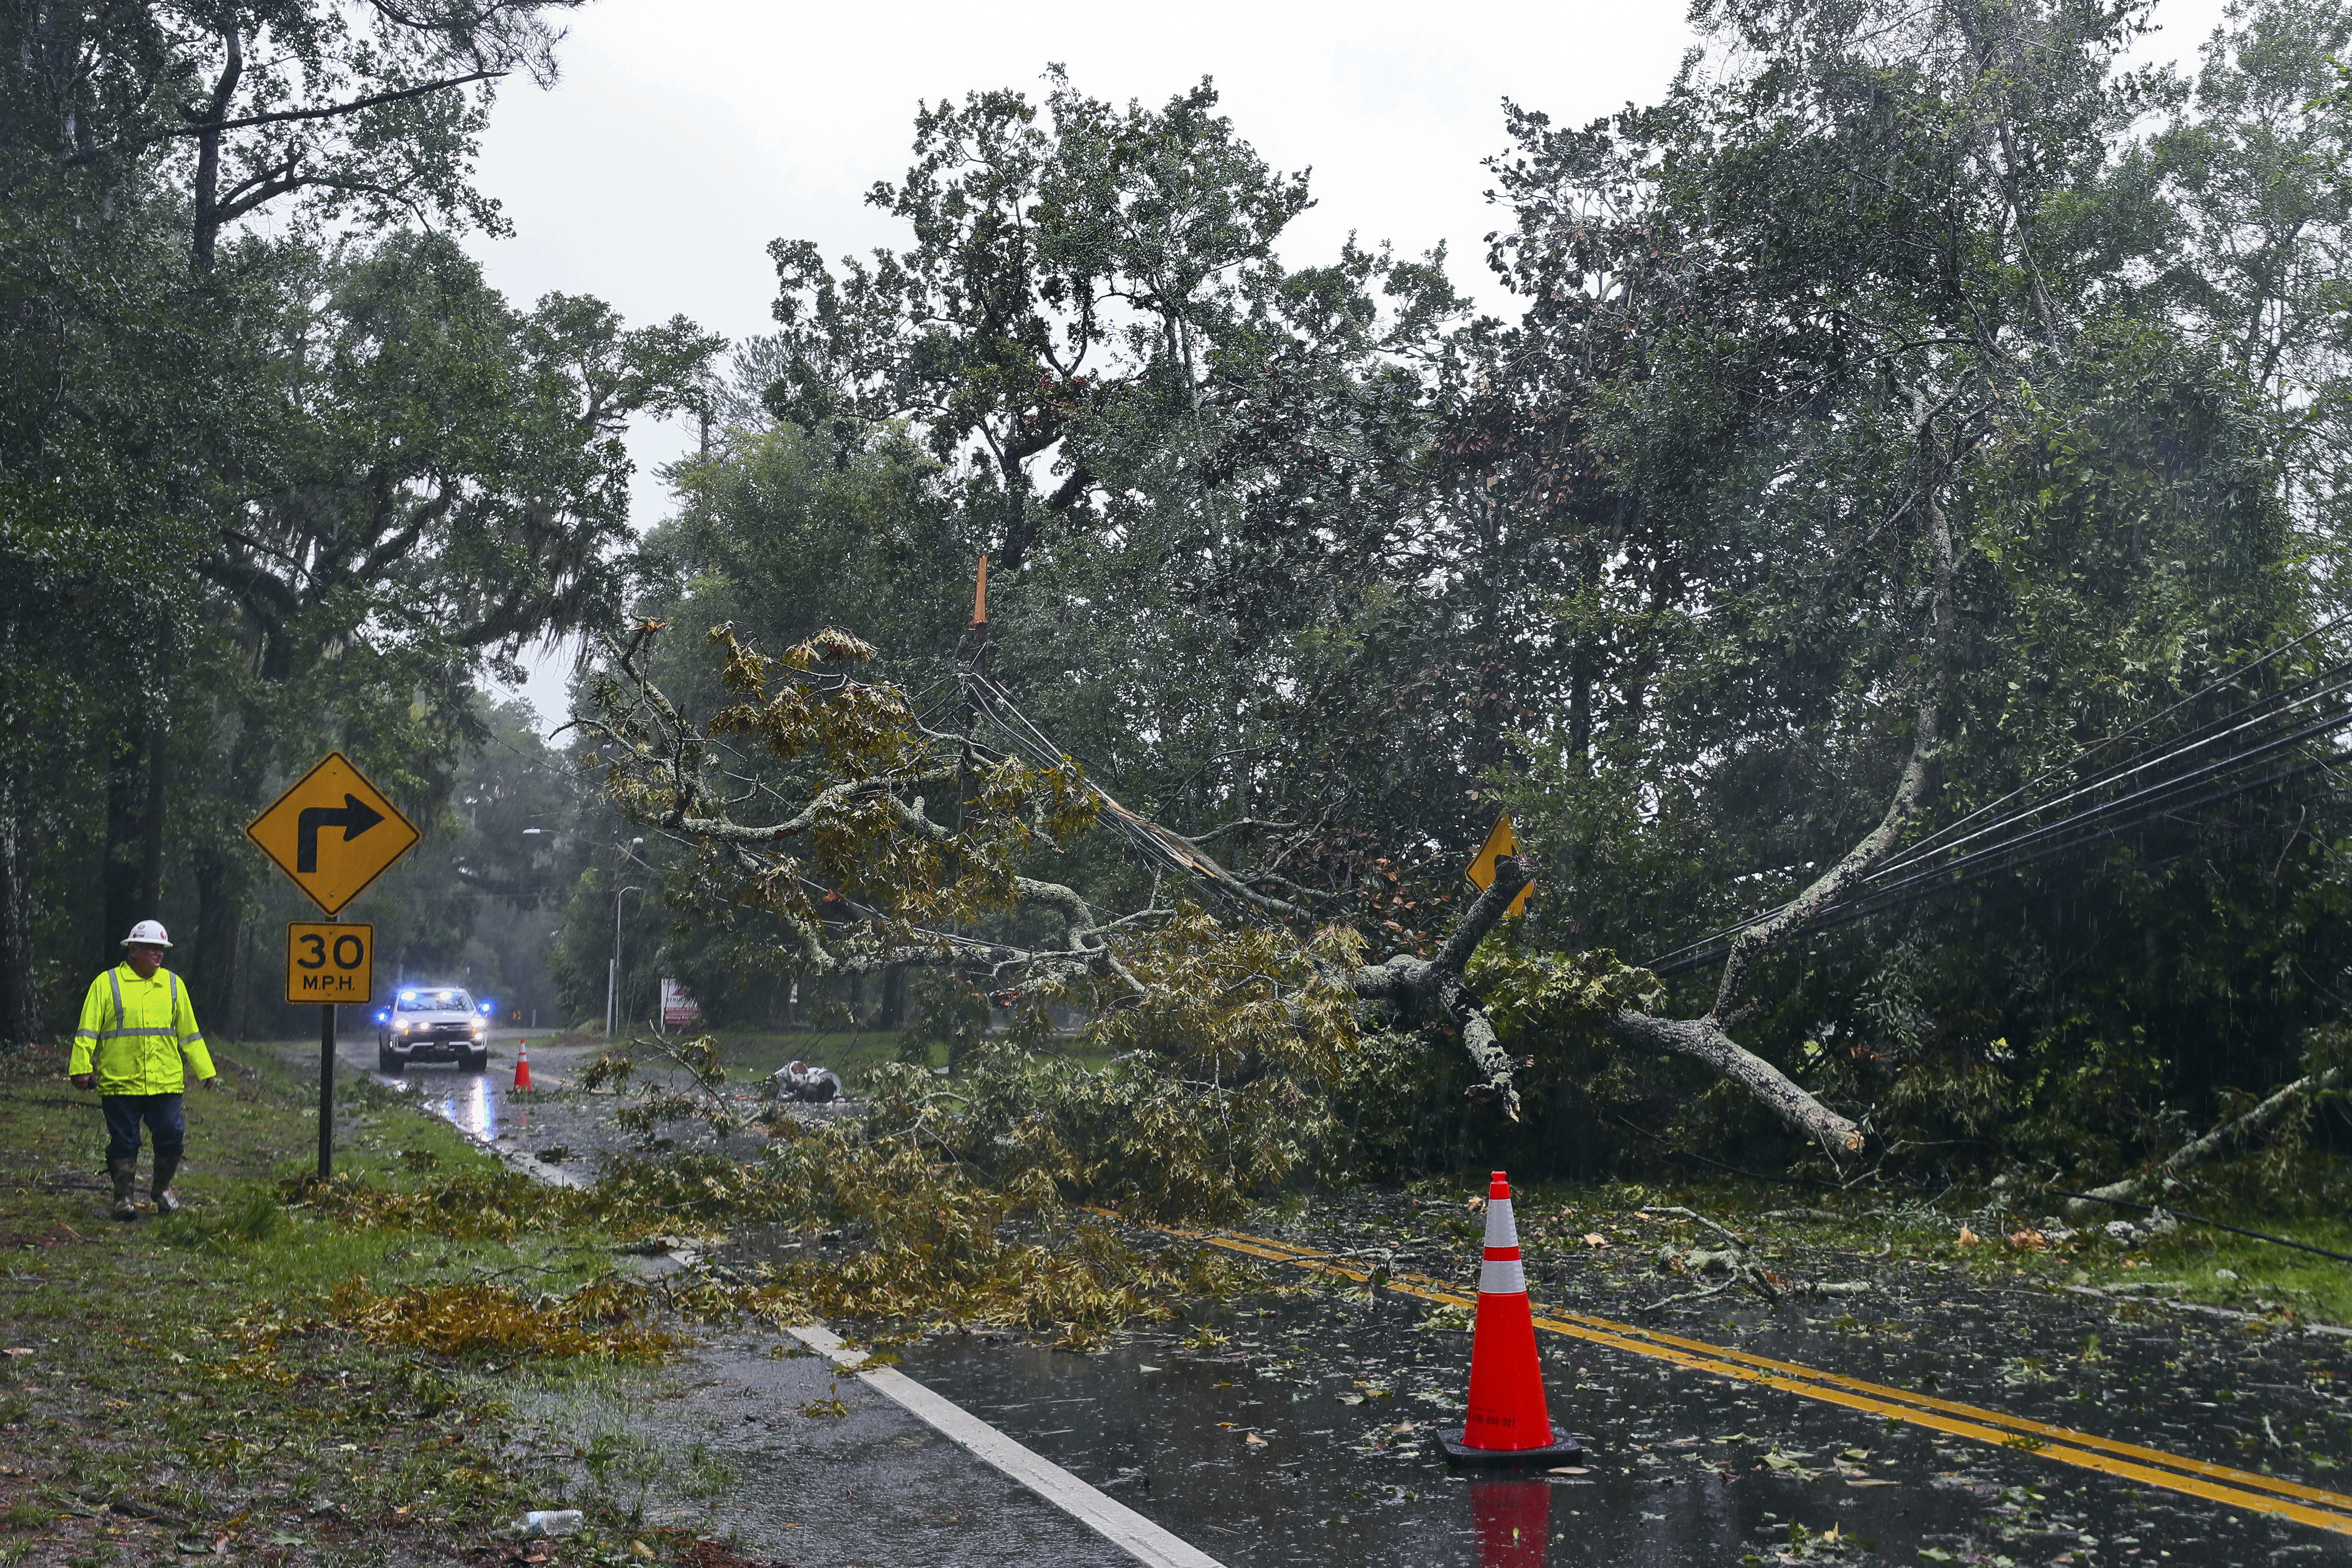 Termina la temporada de huracanes 2023: El sur de la Florida evade el cono  por primera vez en casi una década